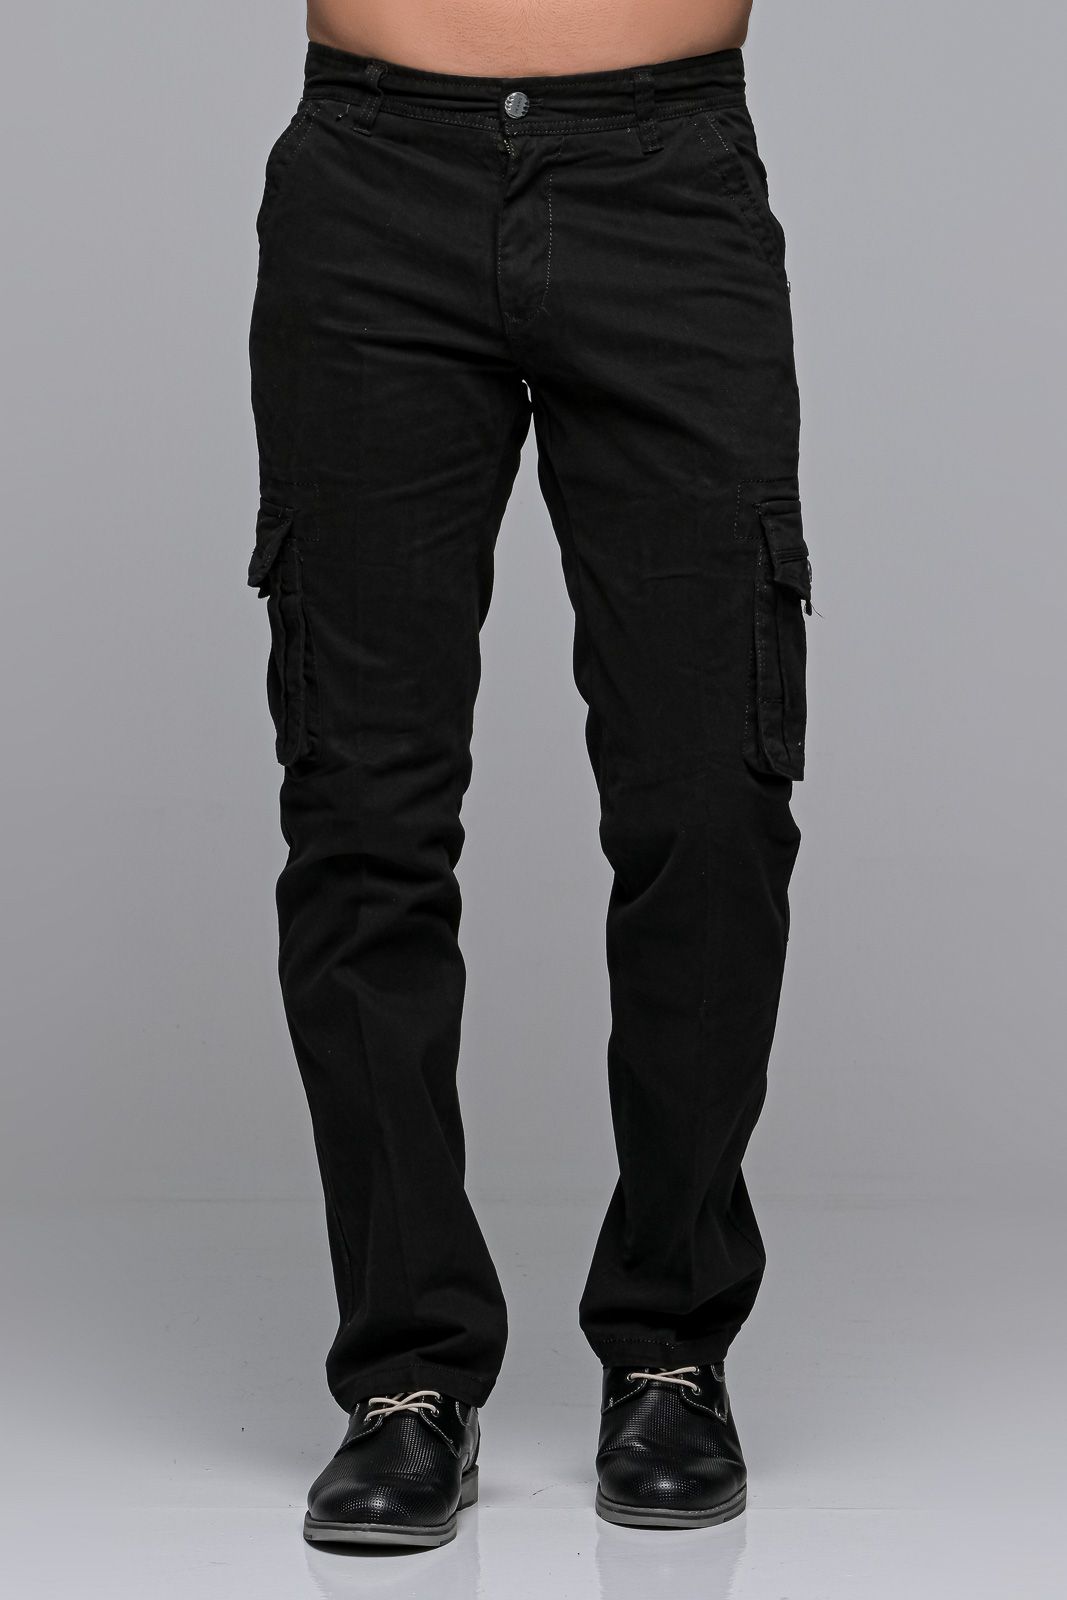 Μαύρο cargo ανδρικό παντελόνι με τσέπες - Straight Fit